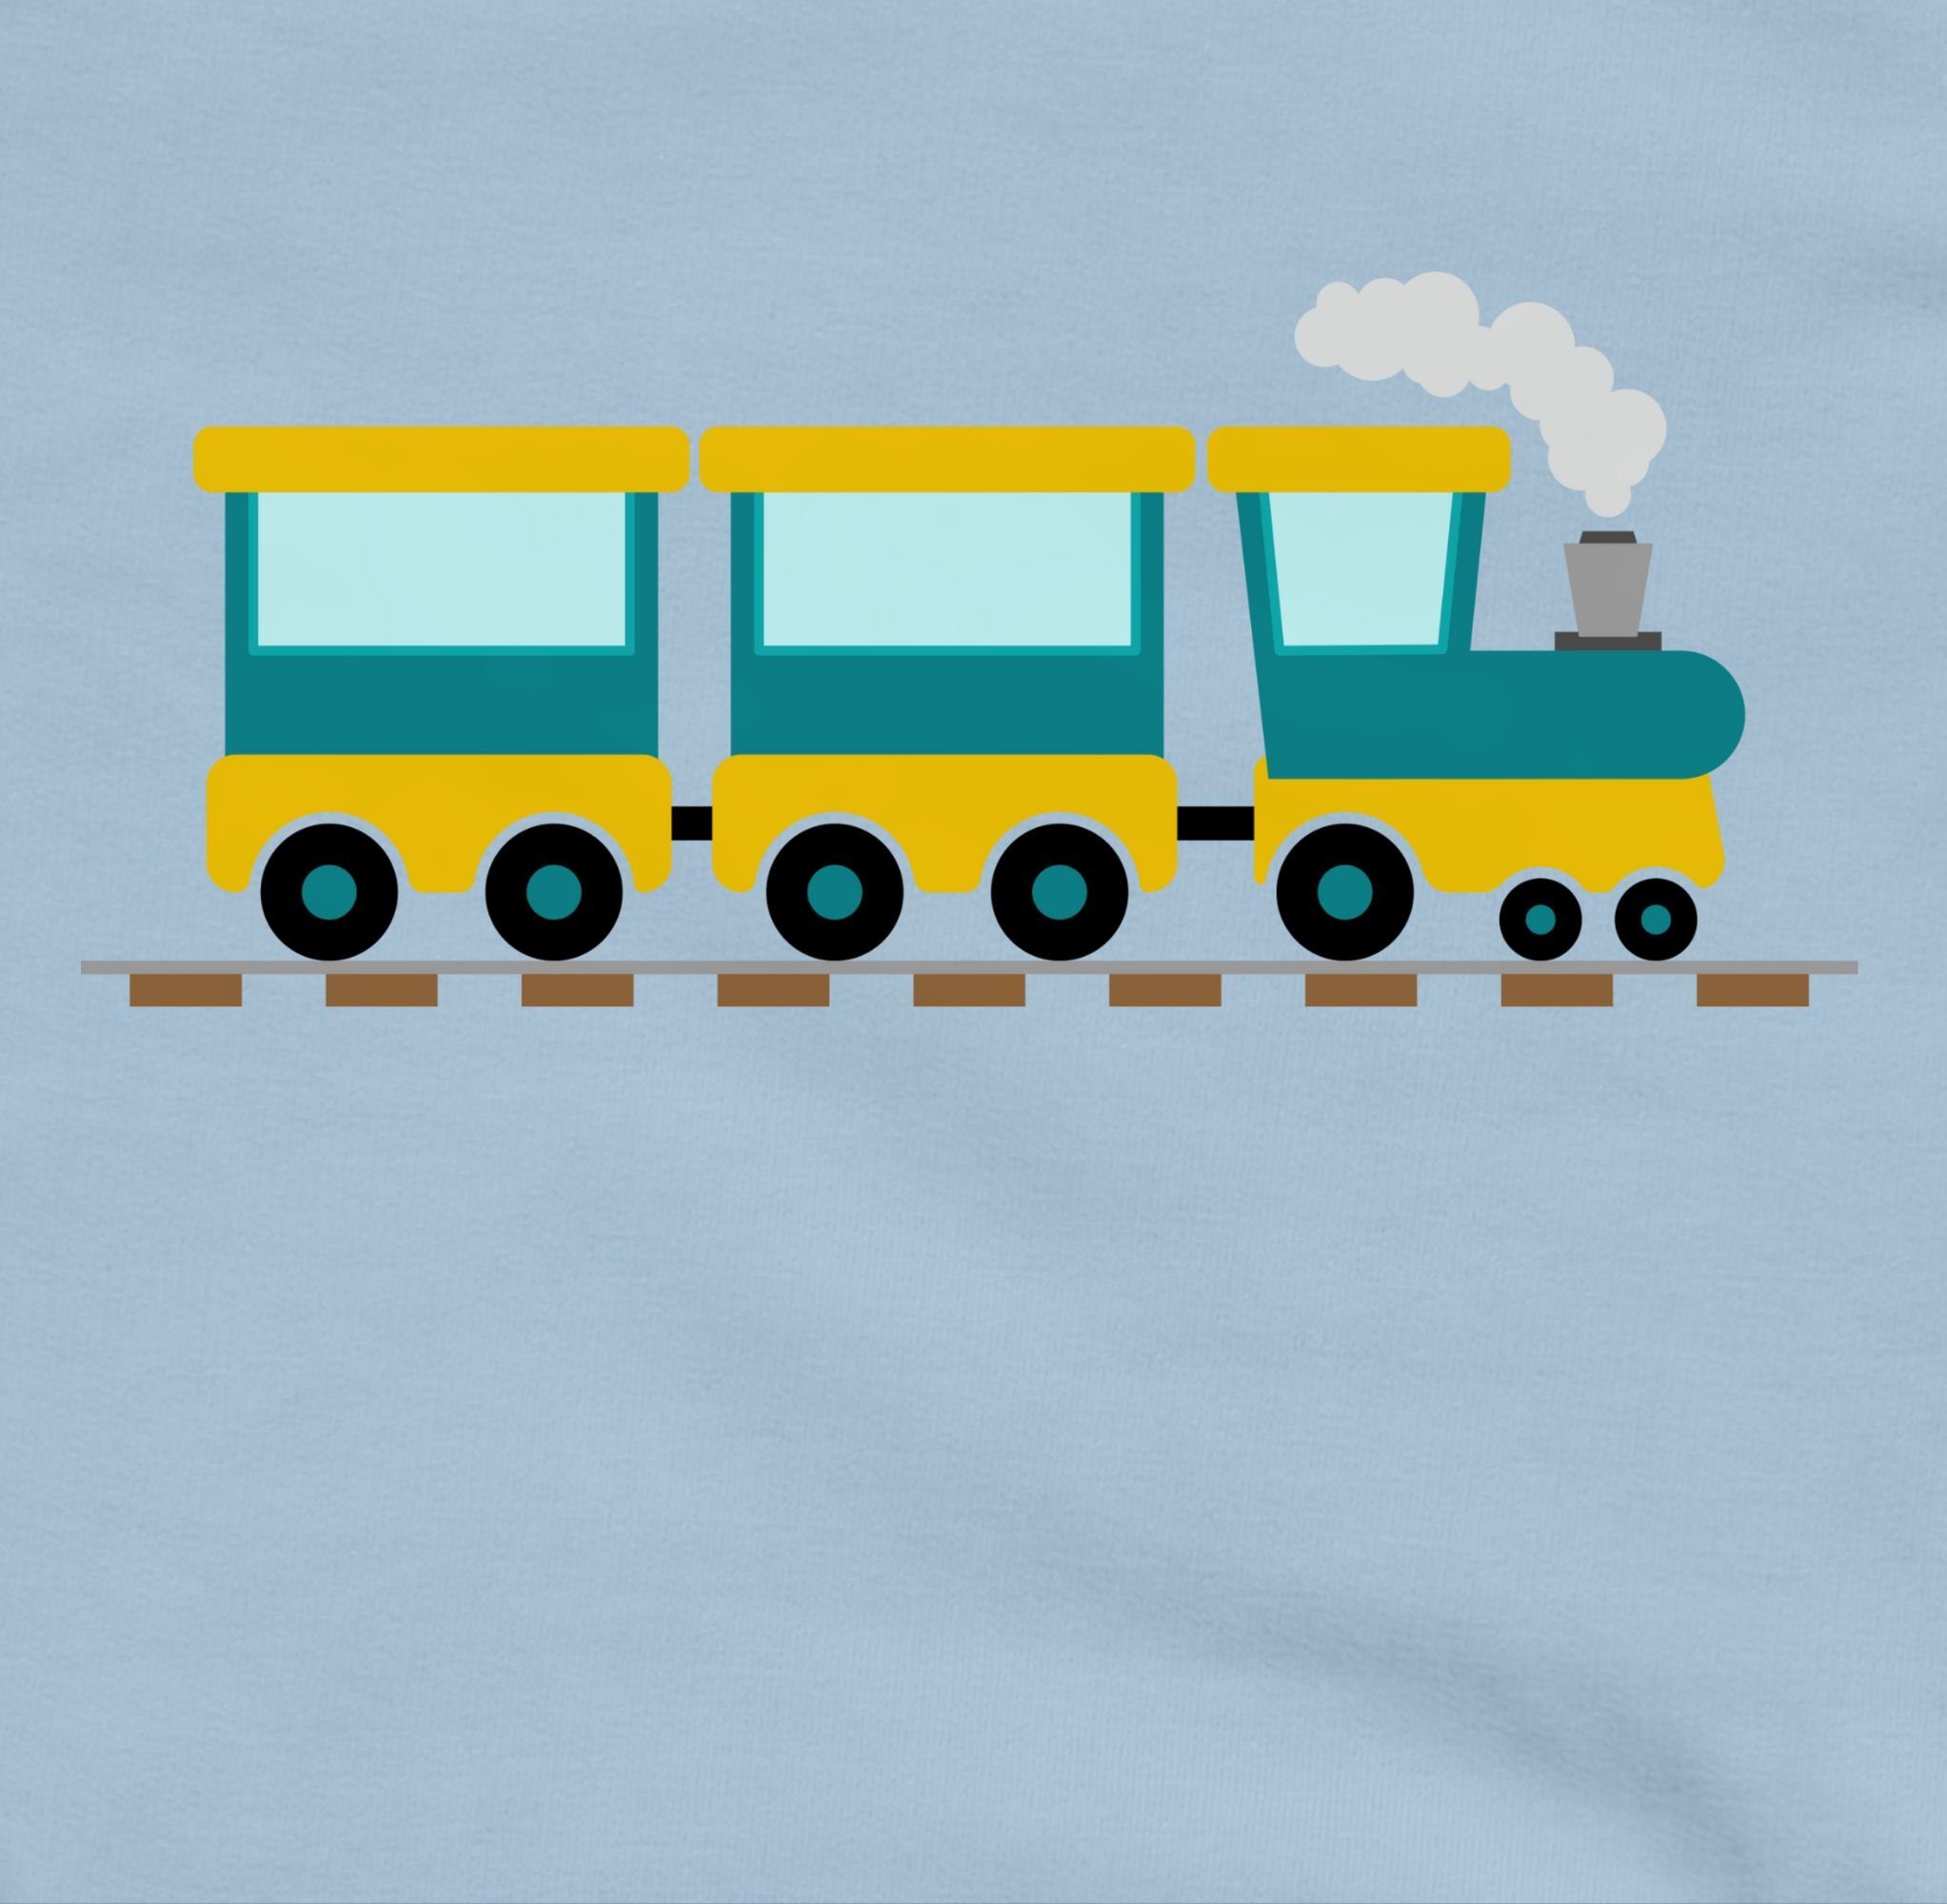 Shirtracer Sweatshirt Eisenbahn Kinder Fahrzeuge Hellblau 3